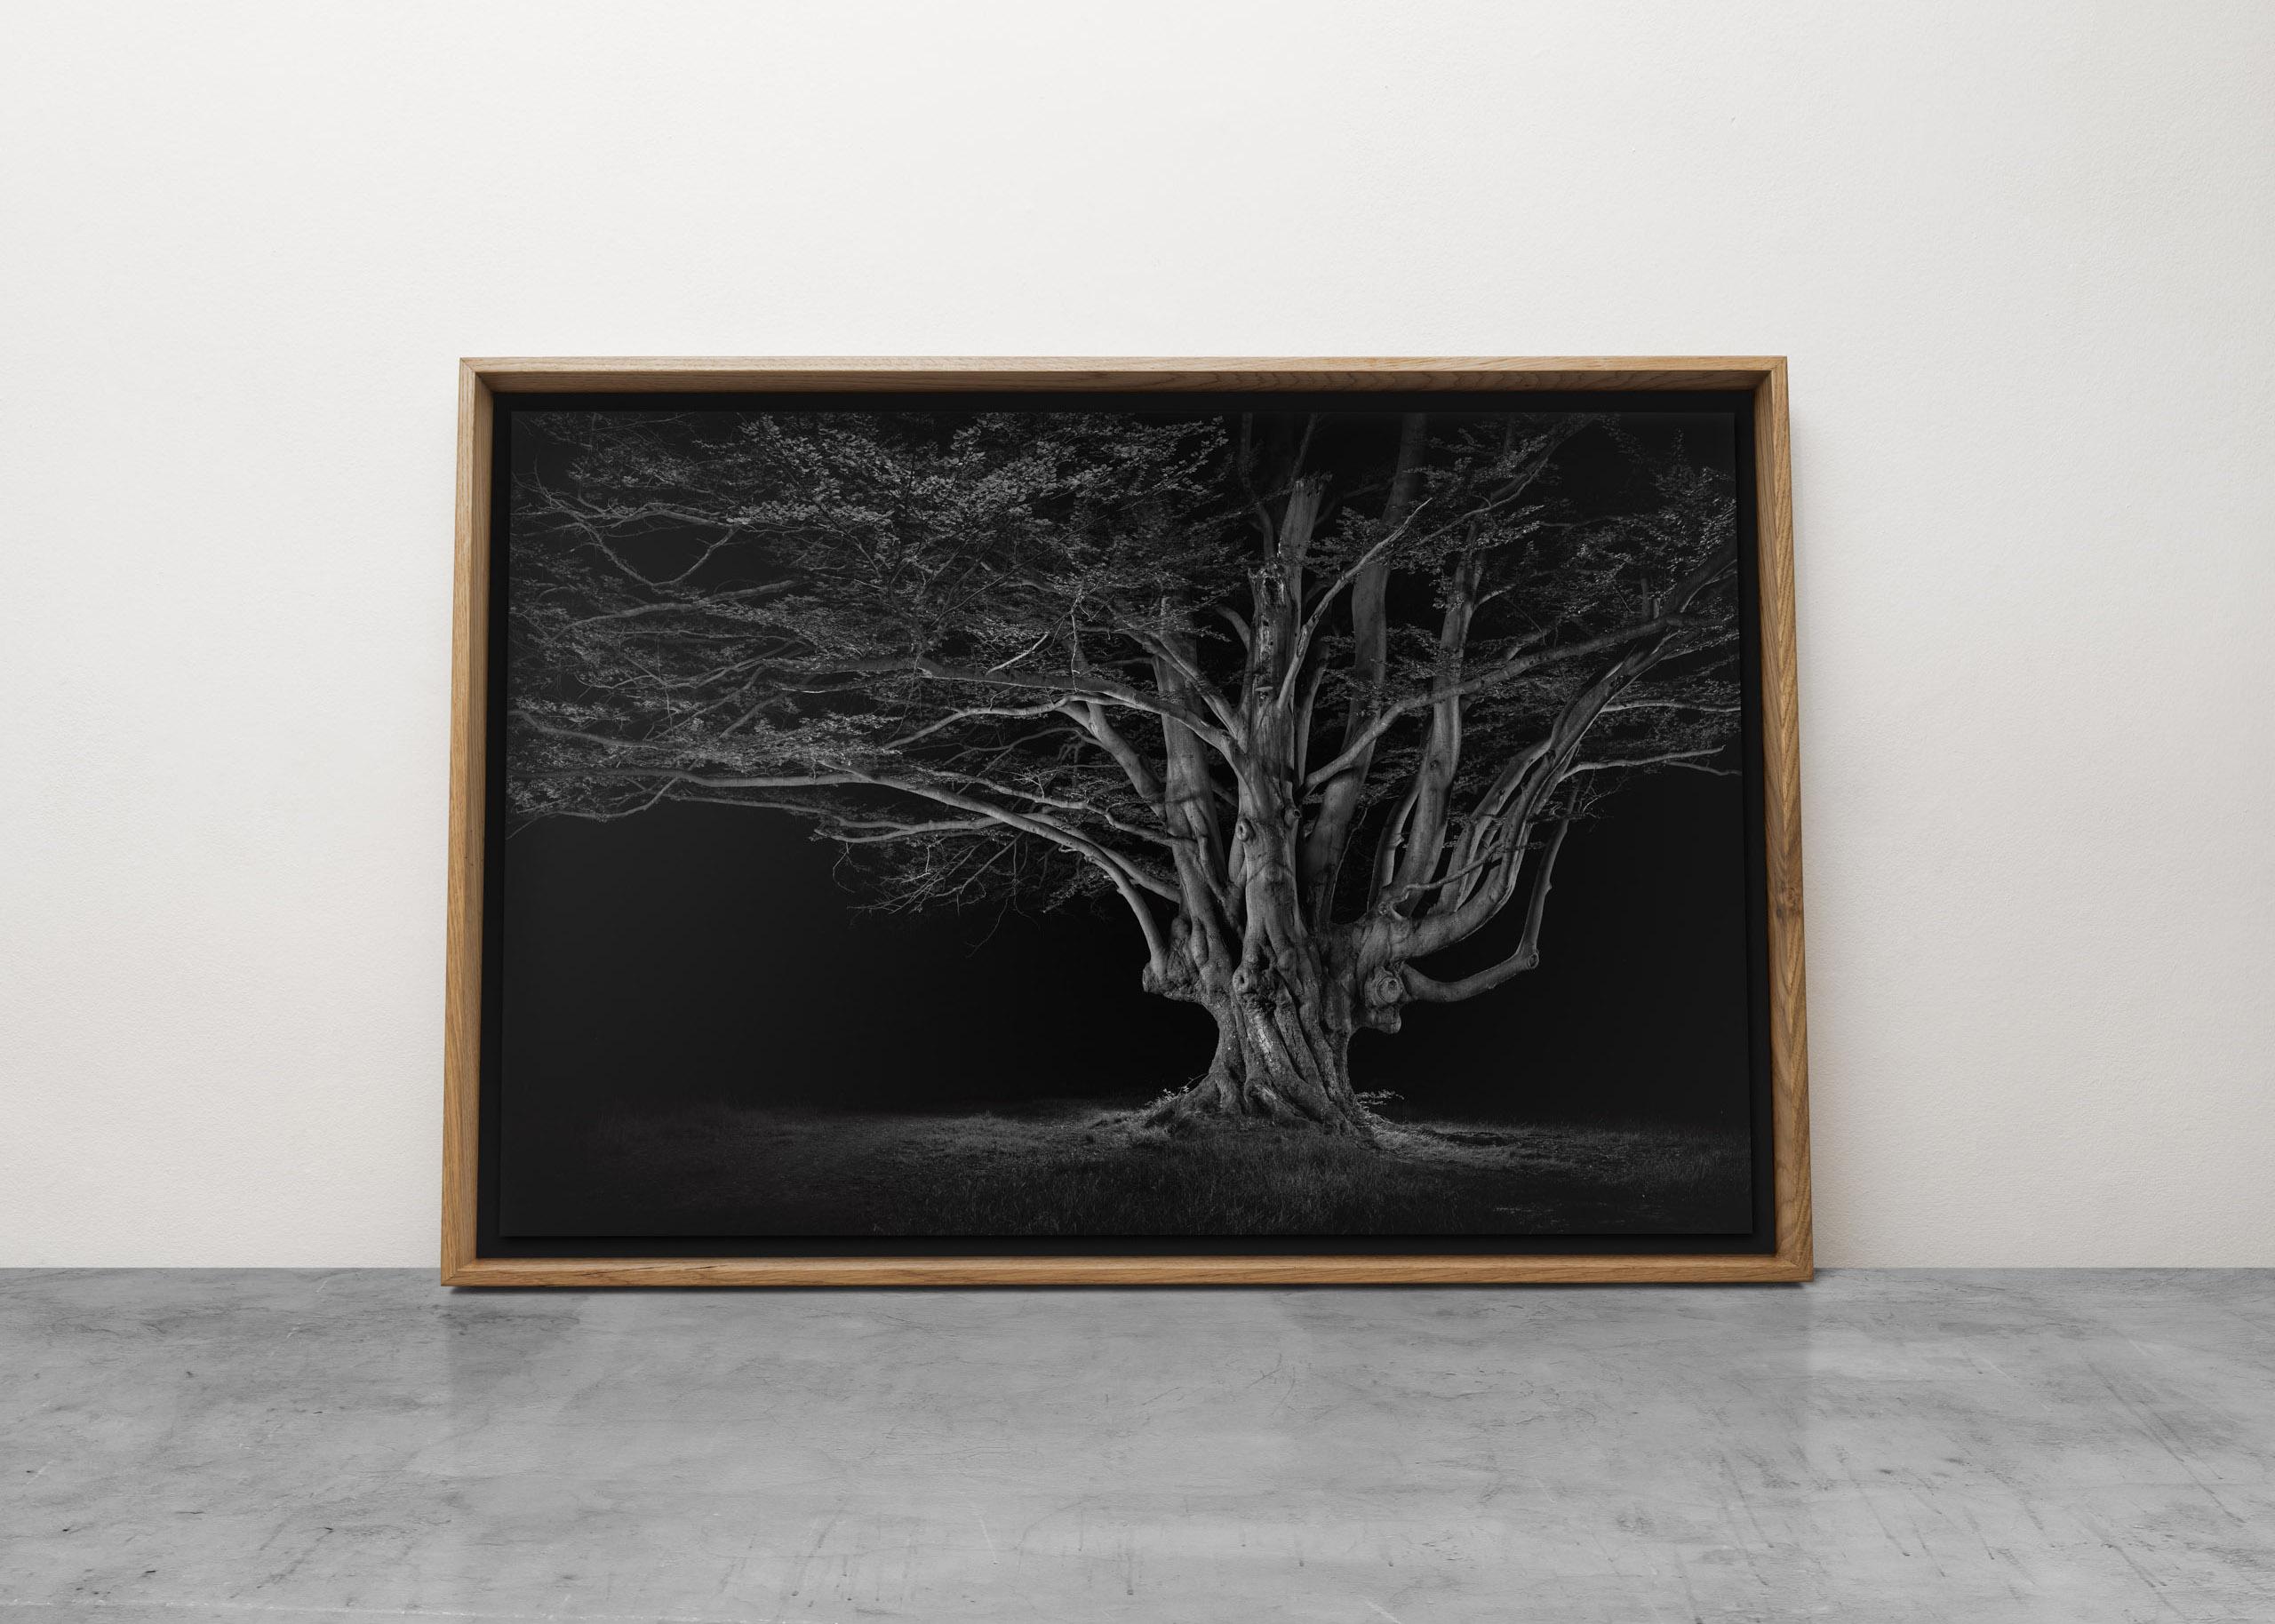 Antike #02, Pollard aus Buche, Schwarz-Weiß-Baumlandschaft – Photograph von Jasper Goodall